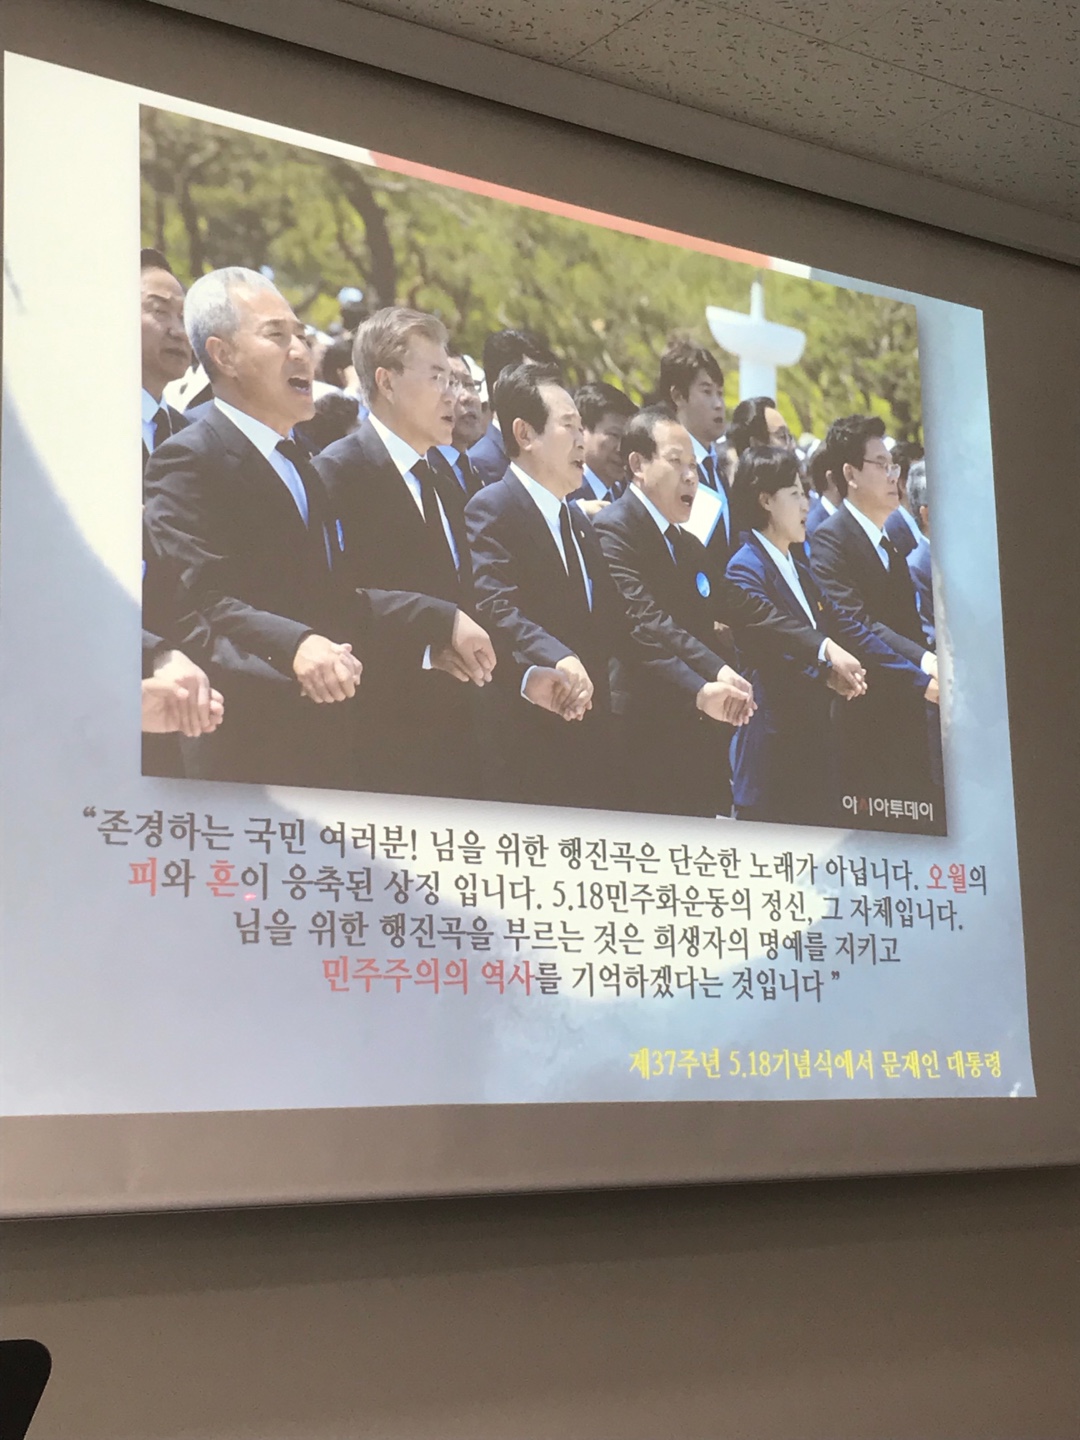 김종률 대표이사가 지난 2017년 제37주년 5·18민주화운동 기념식 당일의 기억에 대해 설명했다. 사진은 문재인 대통령과 김 대표가 함께 손을 잡고 '임을 위한 행진곡'을 부르고 있는 모습.